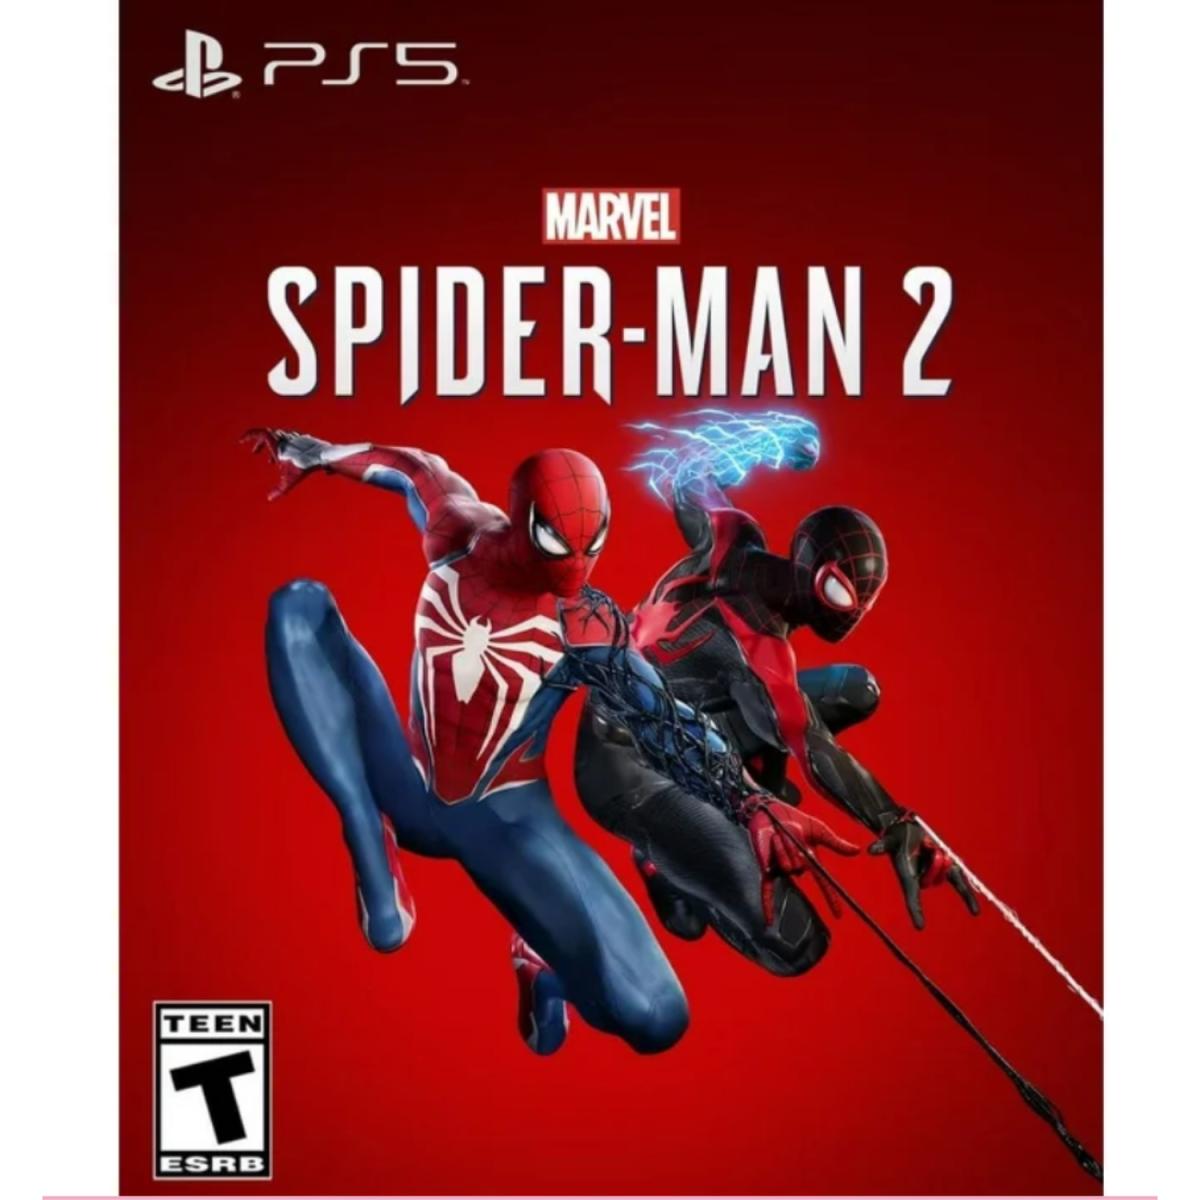 CONSOLA PS5 EDICION DISCO SPIDER MAN 2